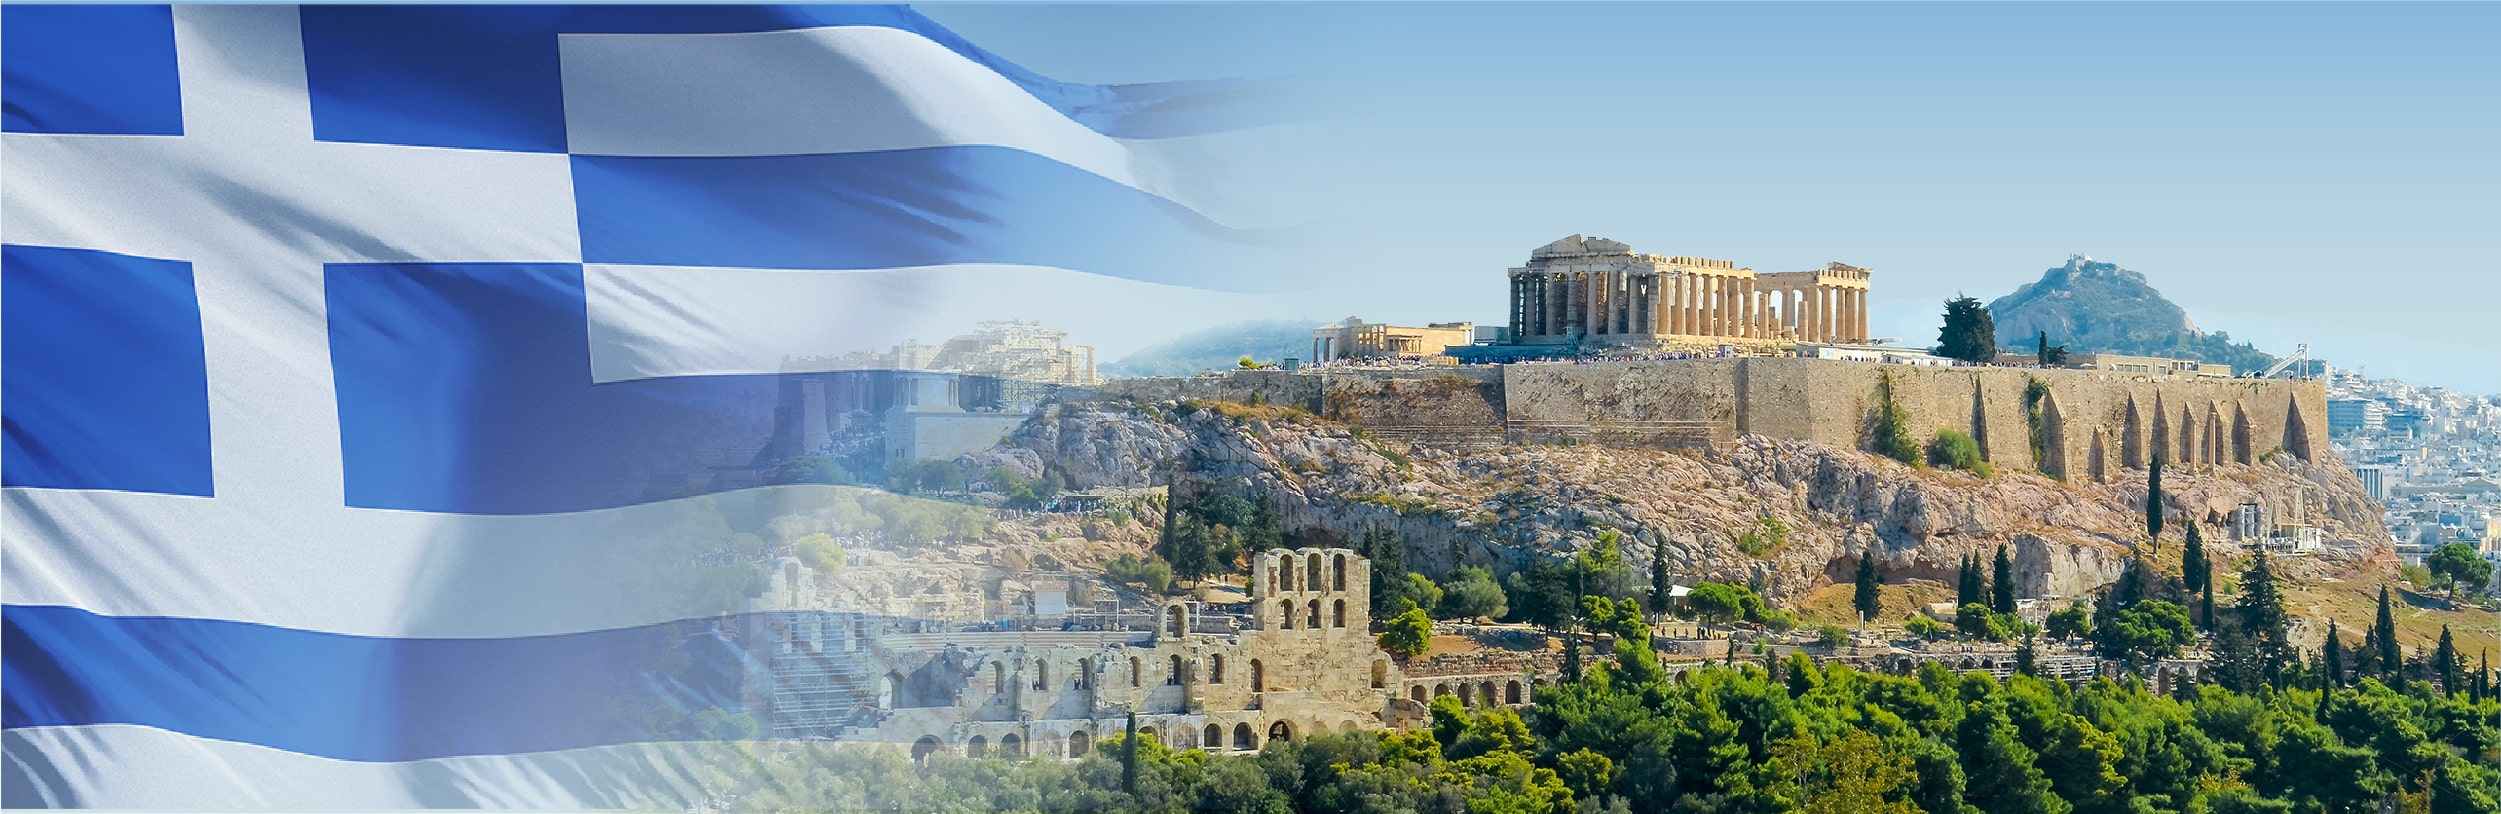 Golden Visa Hy Lạp thời gian áp dụng mức đầu tư 250.000 EUR sắp kết thúc - IMM Group